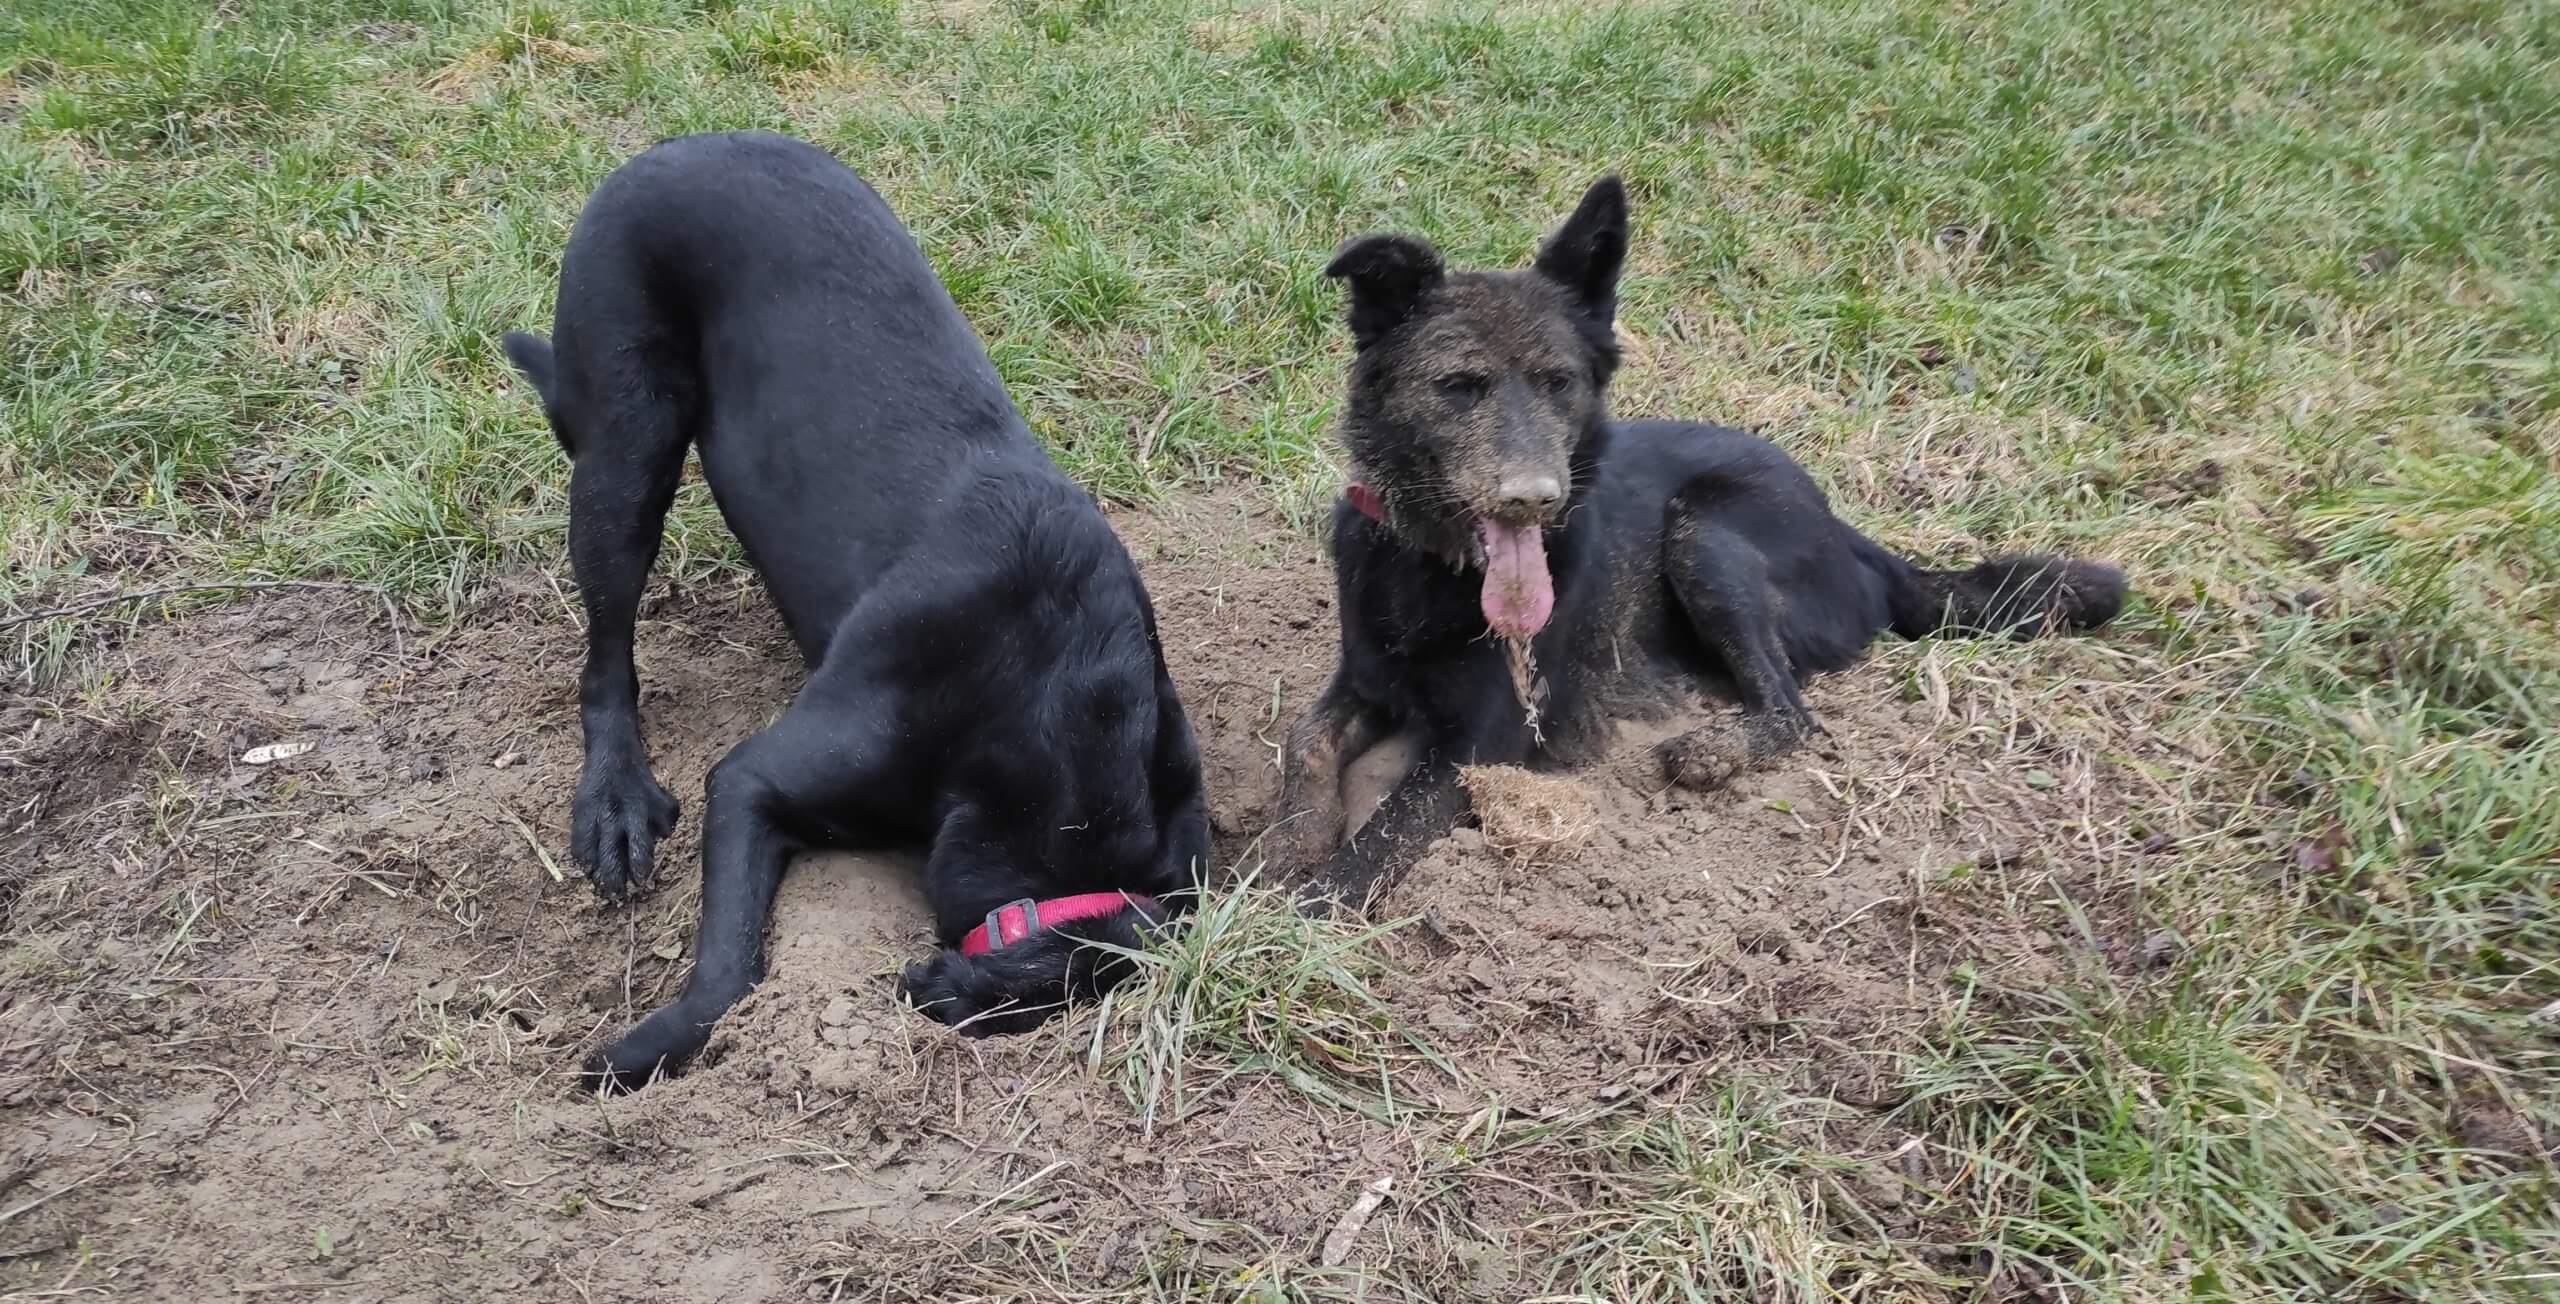 V trávniku je čerstvo vykopaná jama.  Vedľa nej leží spokojne pes ktorý ju vykopal, má celú hlavu špinavú od hliny a dychčí. Druhý pes prišiel jamu skontrolovať, takže má celú hlavu strčenú v nej. 